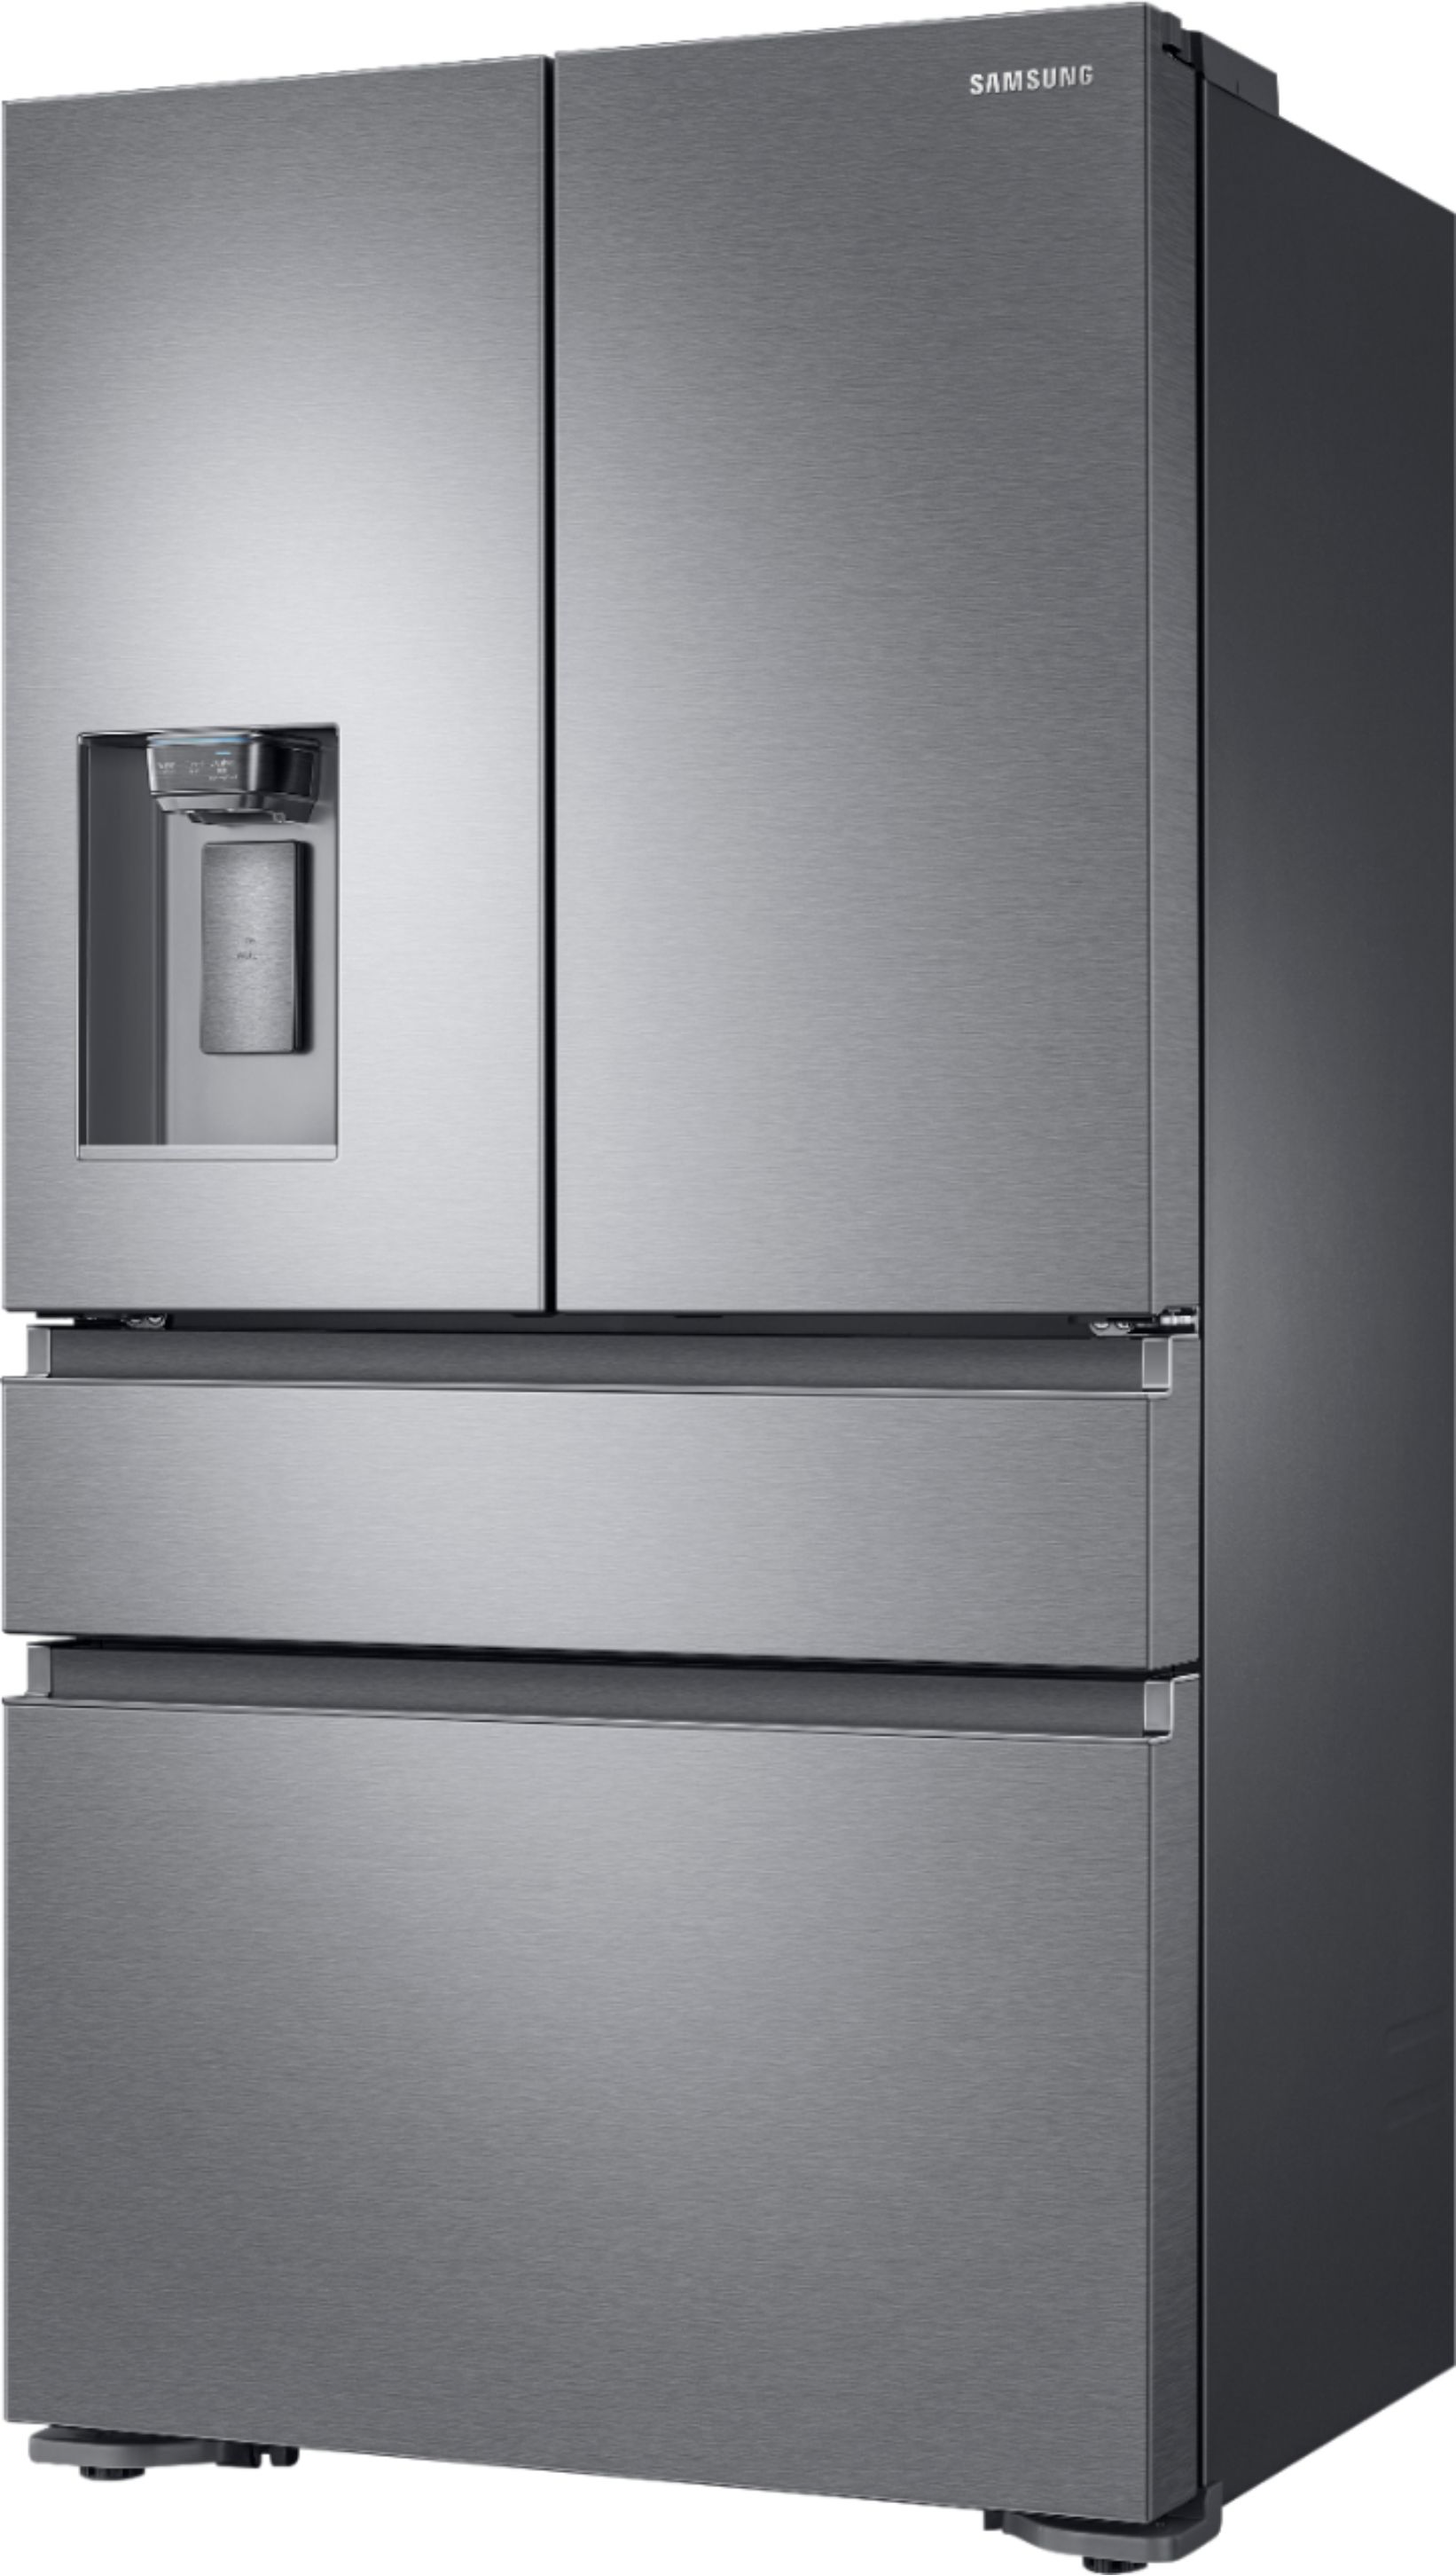 Review: Samsung's 4-Door French Door Refrigerator With Flex Drawer